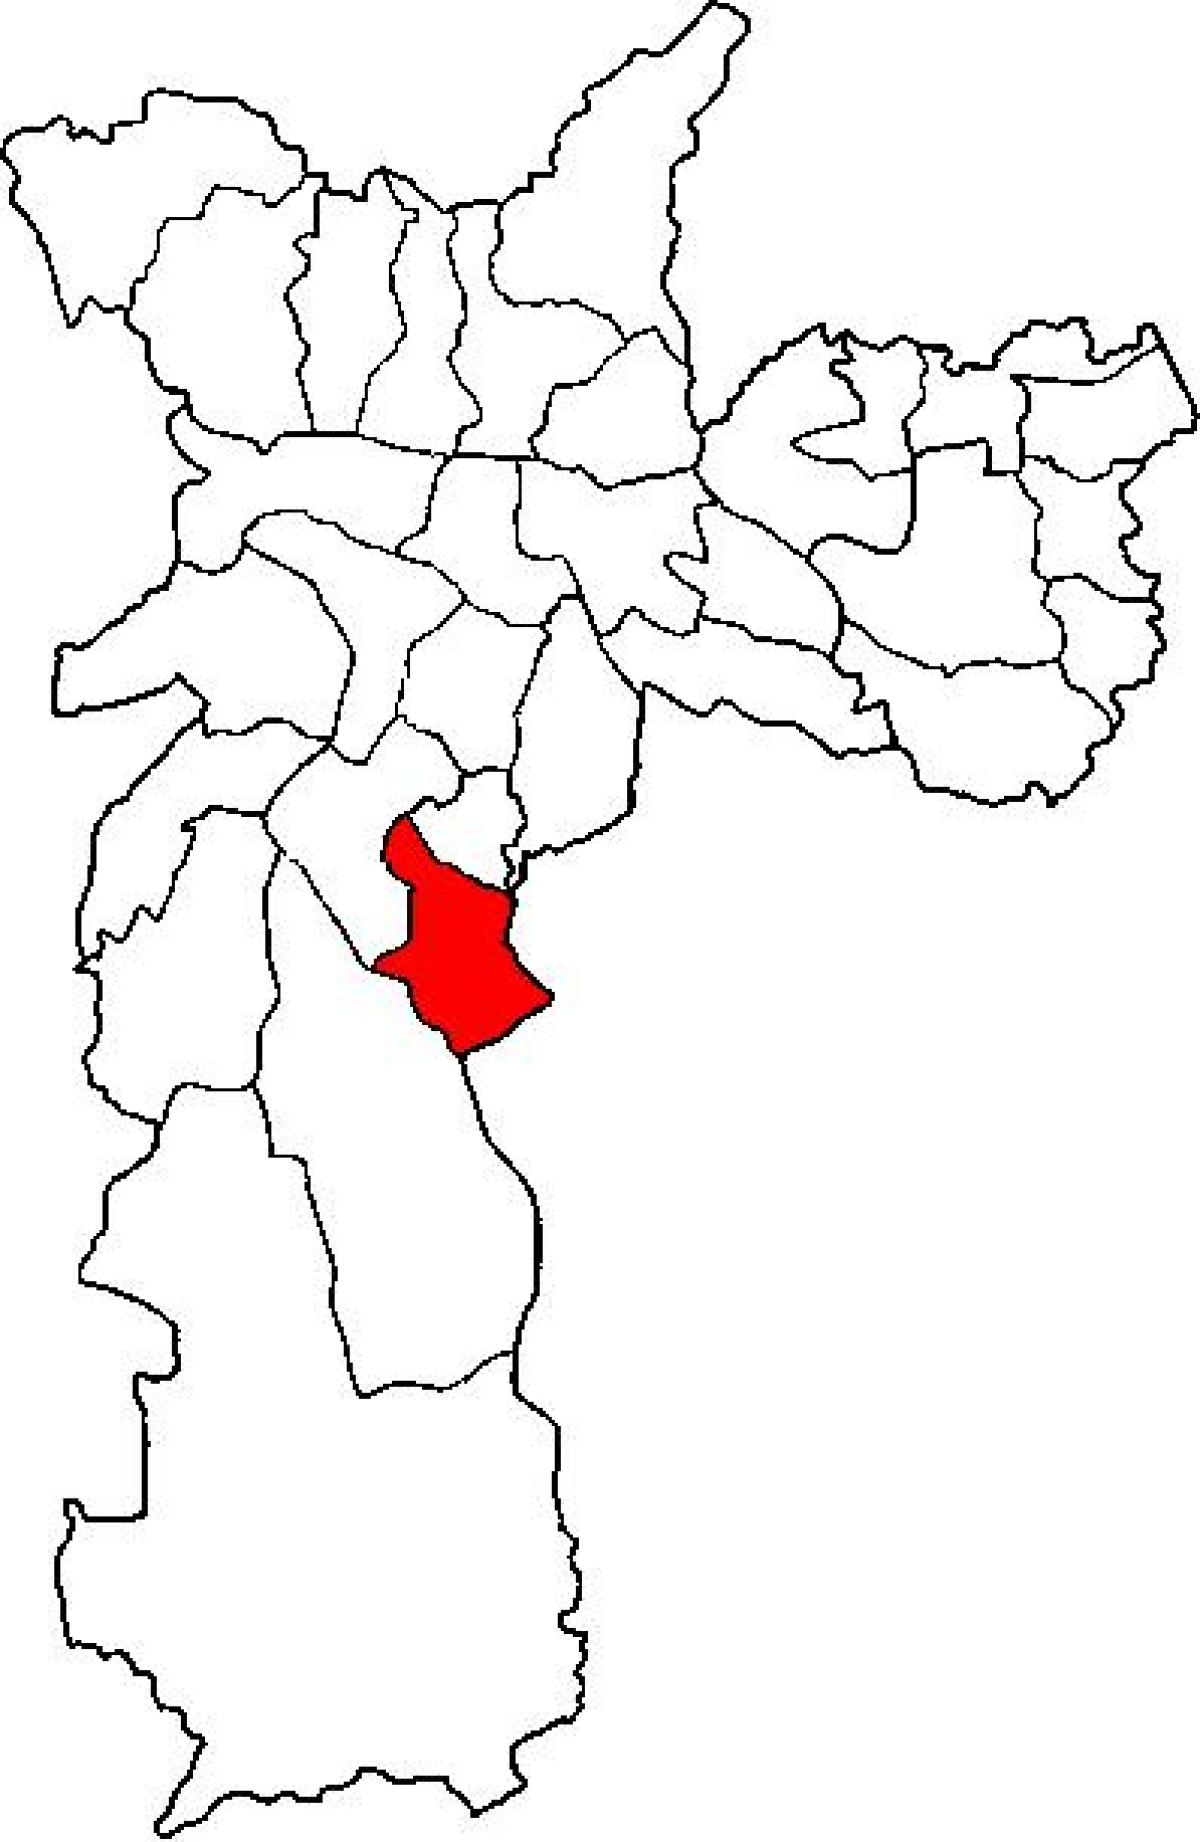 แผนที่ของ Cidade Ademar รายการย่อยขอ prefecture São Paulo